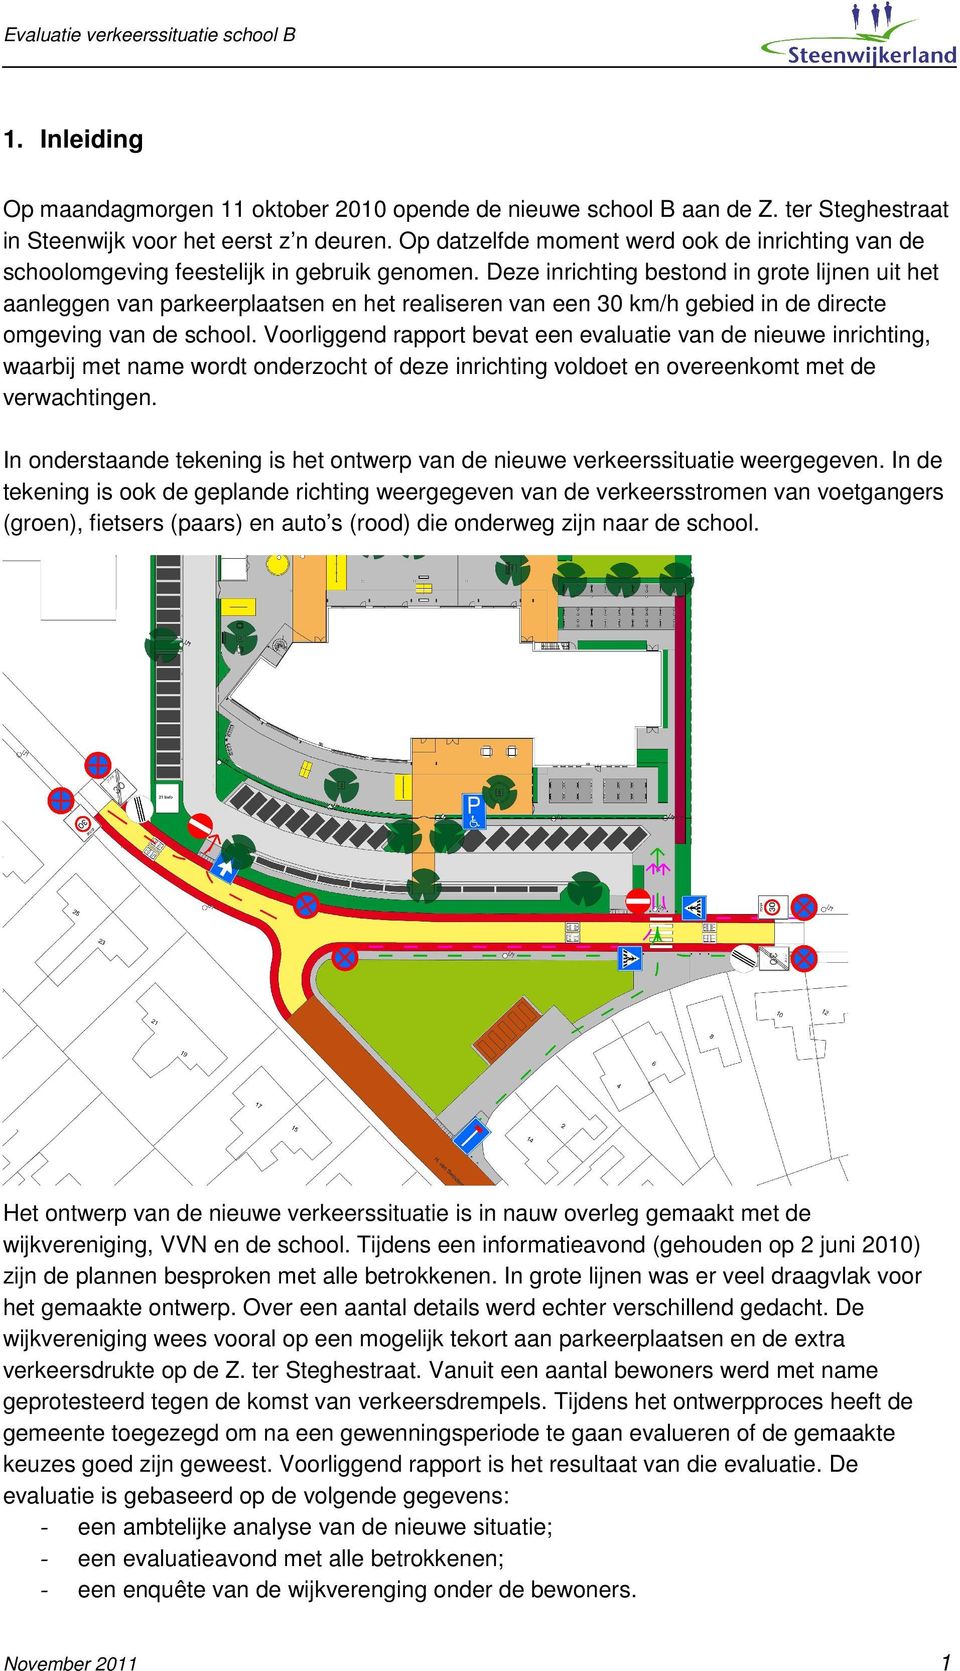 Deze inrichting bestond in grote lijnen uit het aanleggen van parkeerplaatsen en het realiseren van een 30 km/h gebied in de directe omgeving van de school.